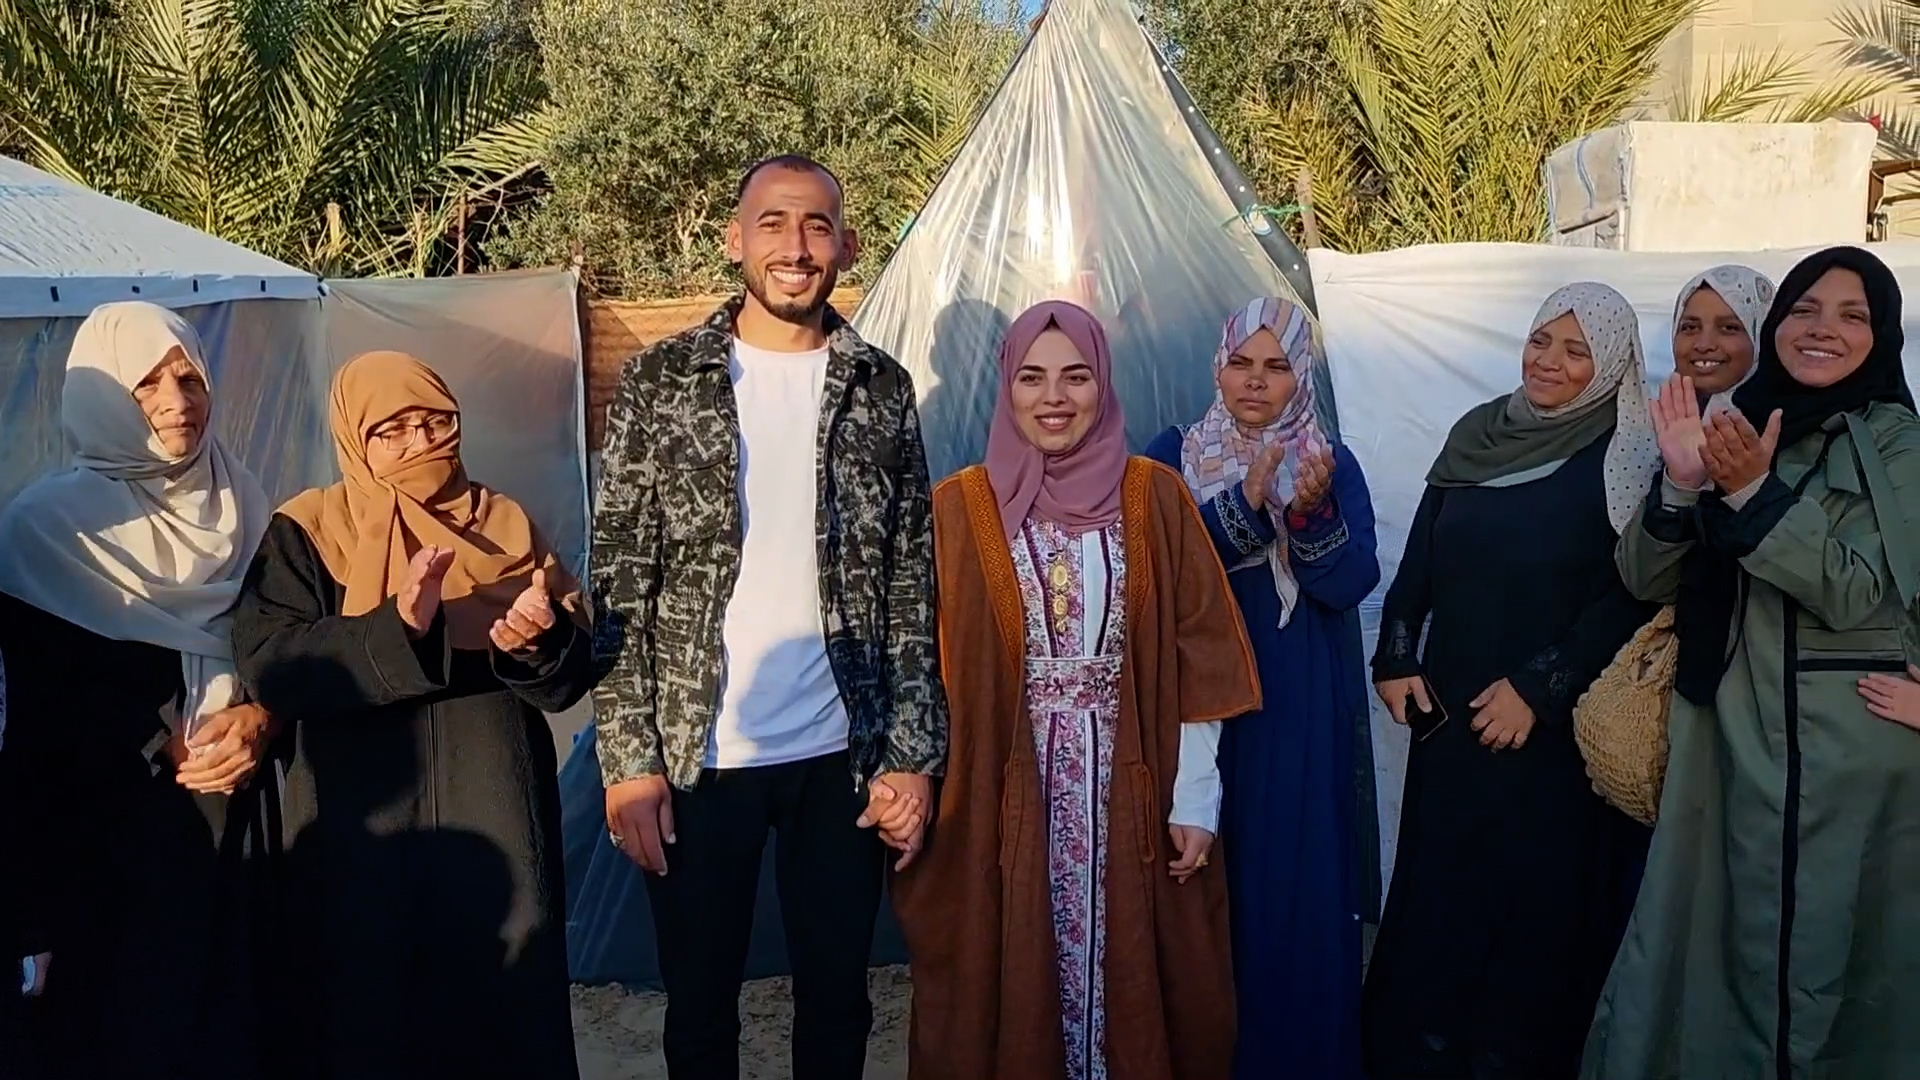 تحديا ظروف الحرب المأساوية.. فلسطينيان يحتفلان بزفافهما في خيمة برفح | أخبار – البوكس نيوز